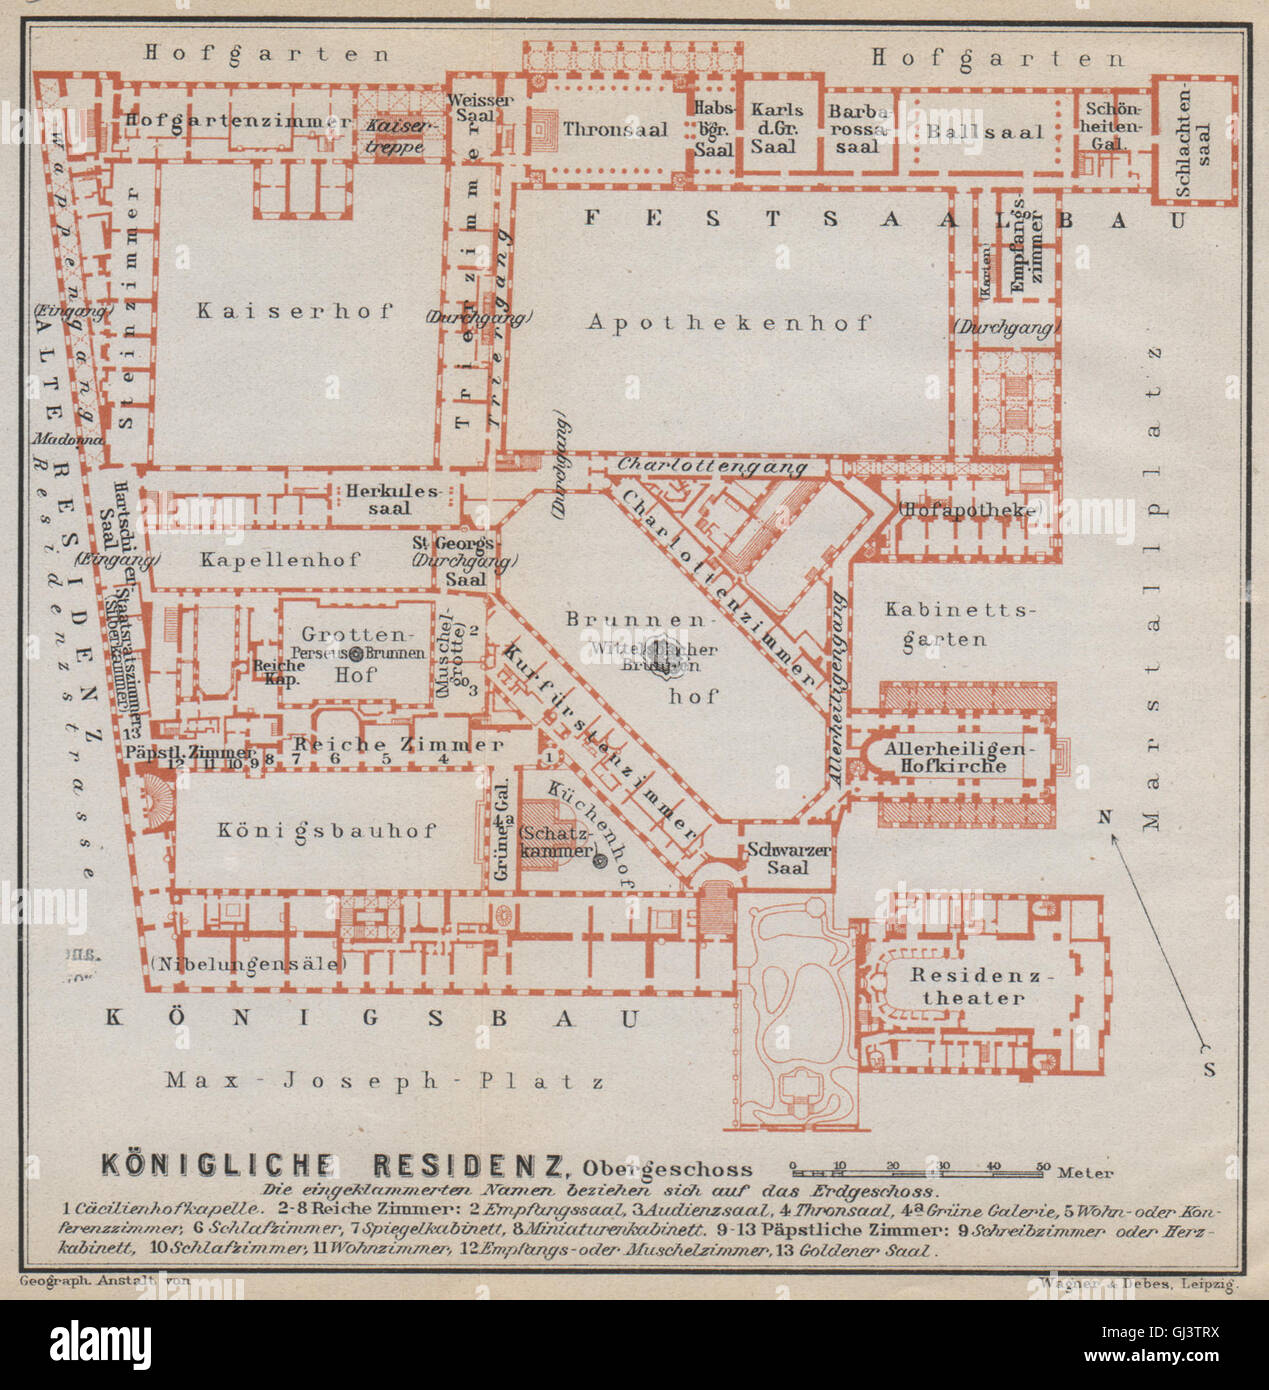 Munich / MÜNCHNER RESIDENZ. Royal palace. Königliche. Ground plan, 1914 map Stock Photo